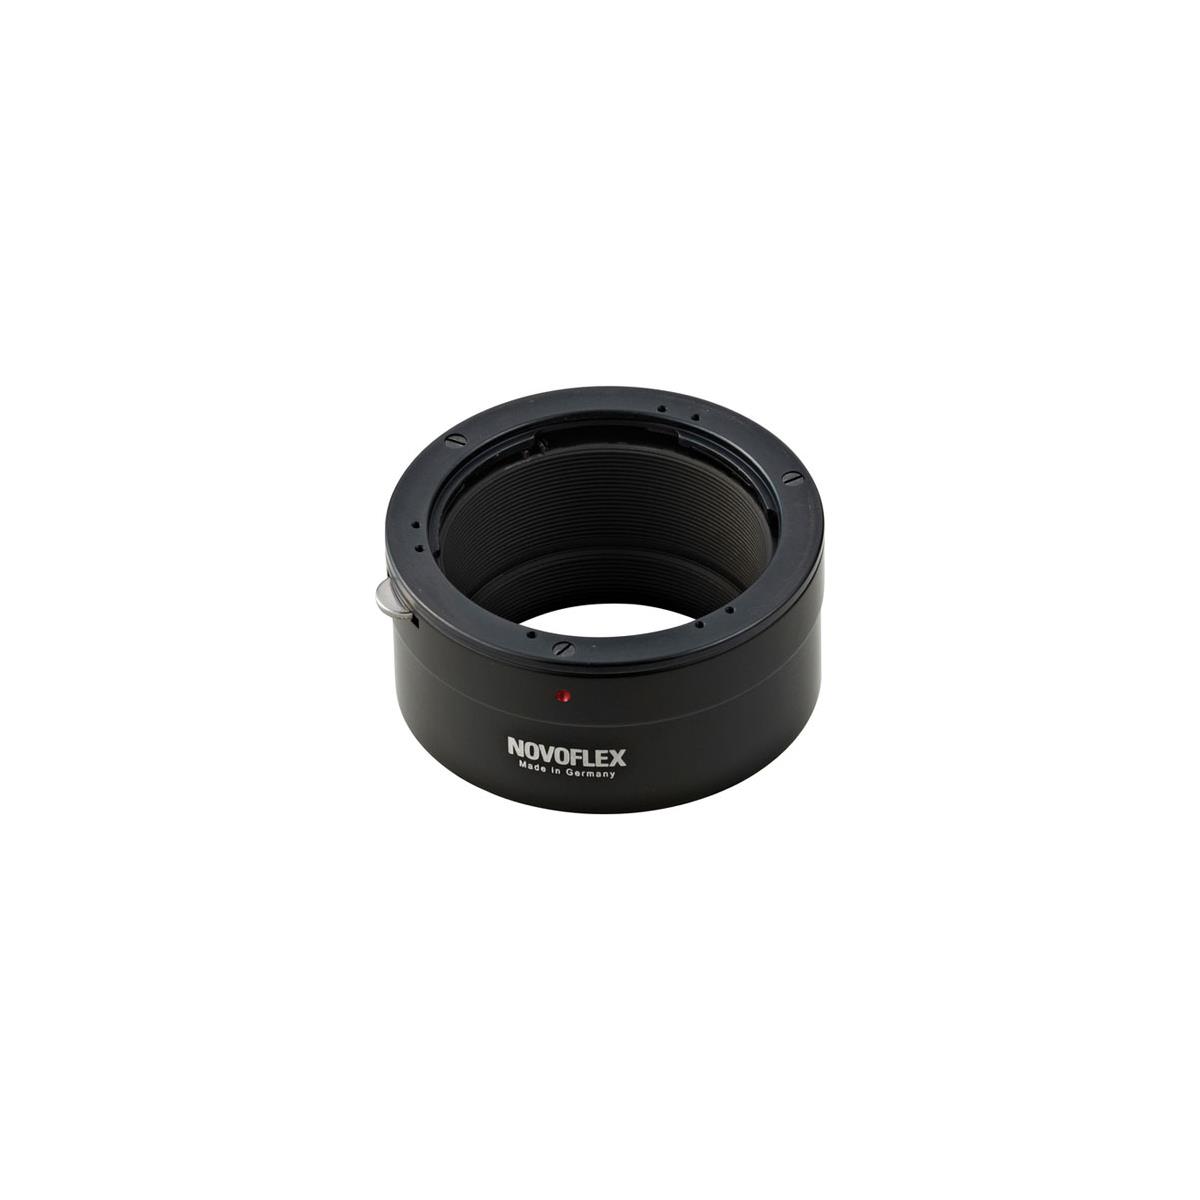 Image of Novoflex Adaptr Contax/Yashica Lens to Sony NEX Camera